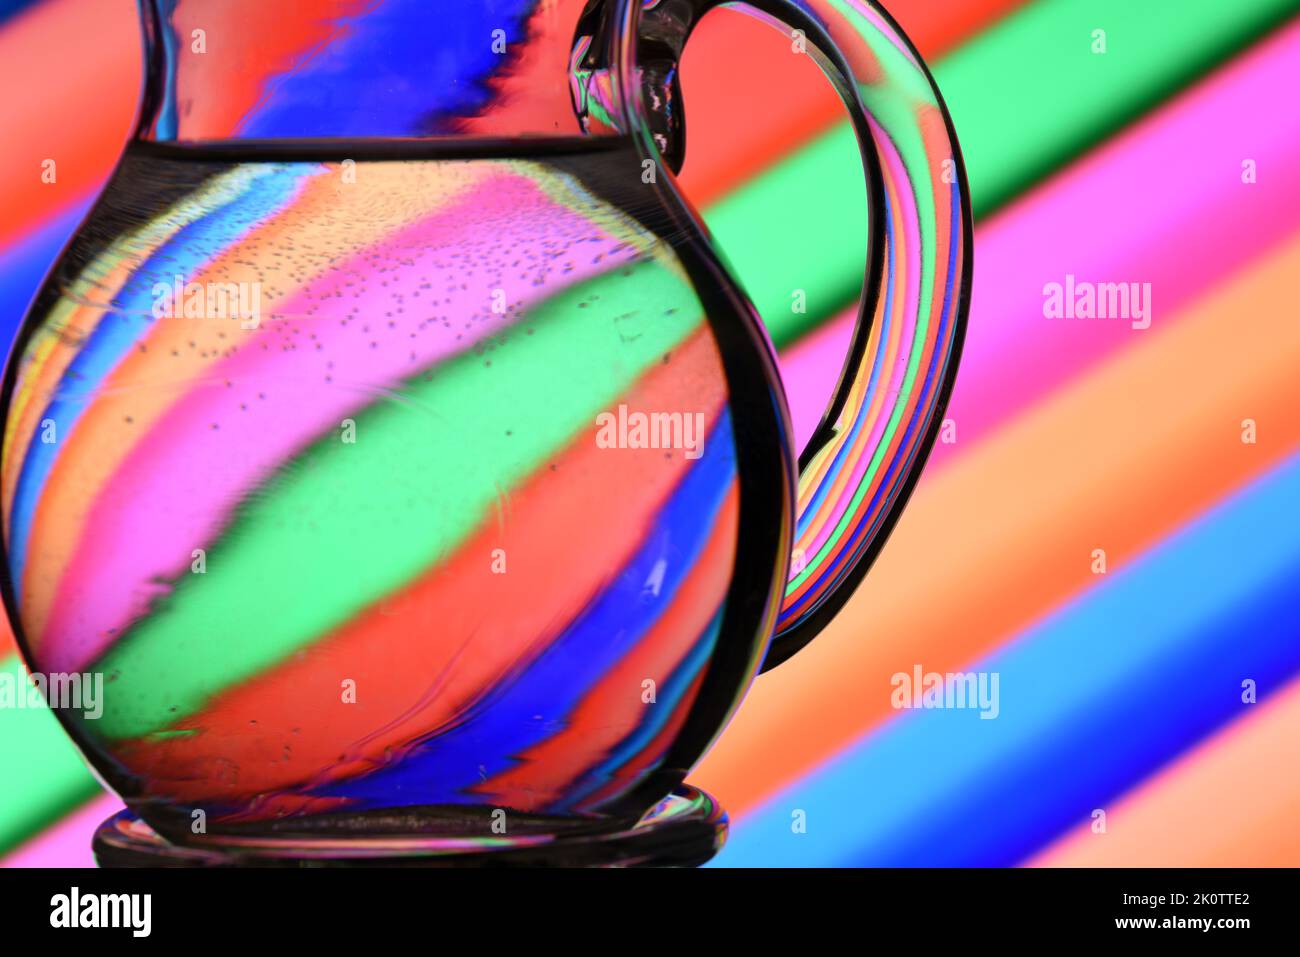 Ilusión óptica creada mediante la refracción de la luz con un recipiente de cristal lleno de agua y líneas diagonales de colores Stock Photo